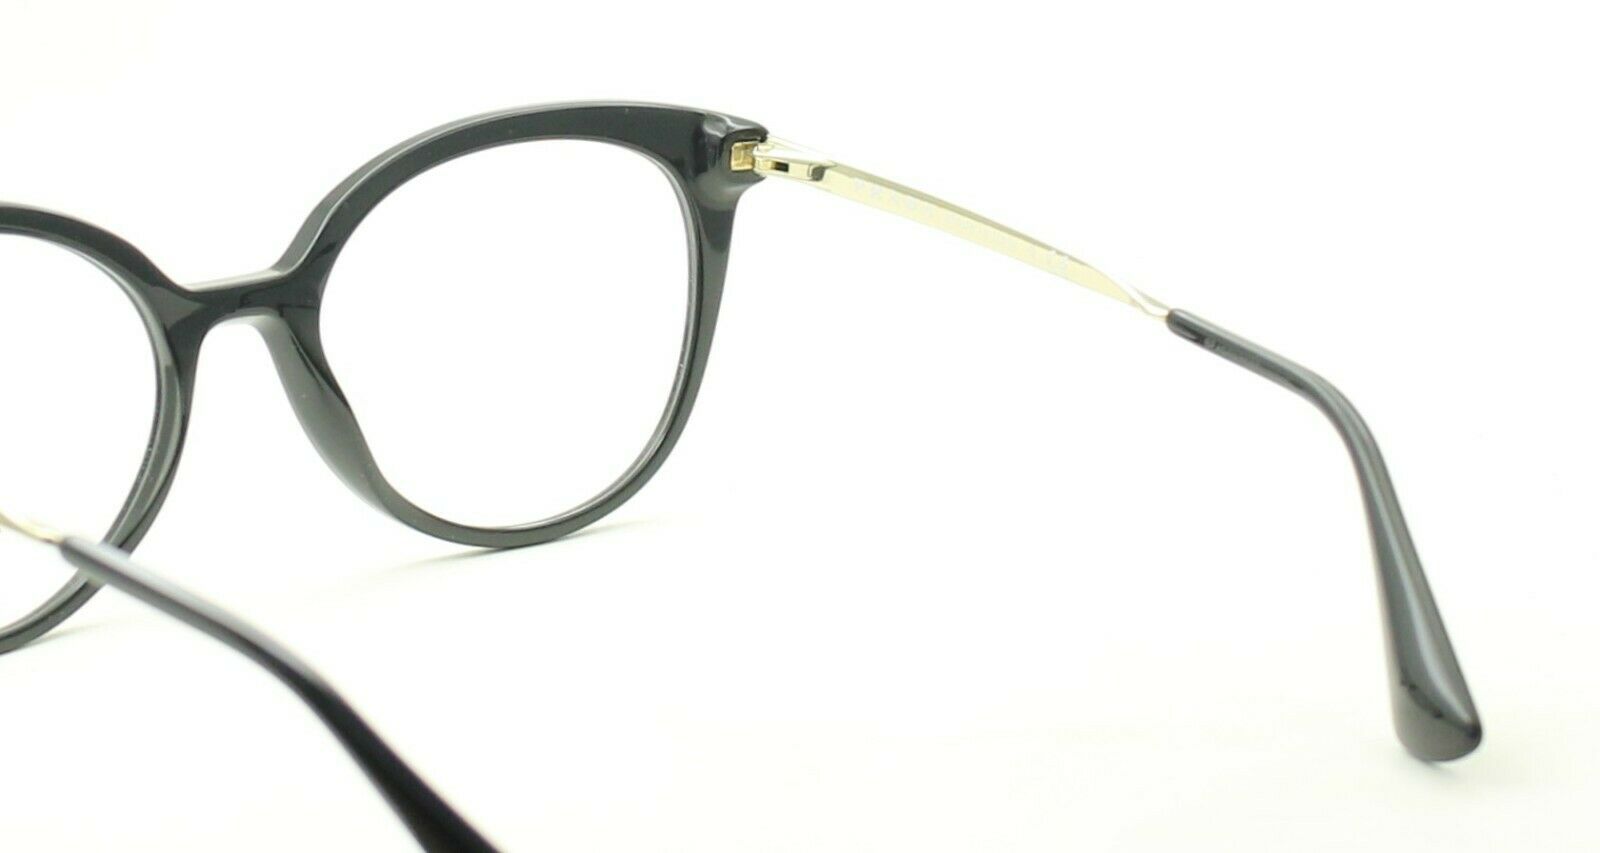 PRADA VPR 12U 1AB-1O1 53mm Eyewear FRAMES RX Optical Eyeglasses Glasses NewItaly